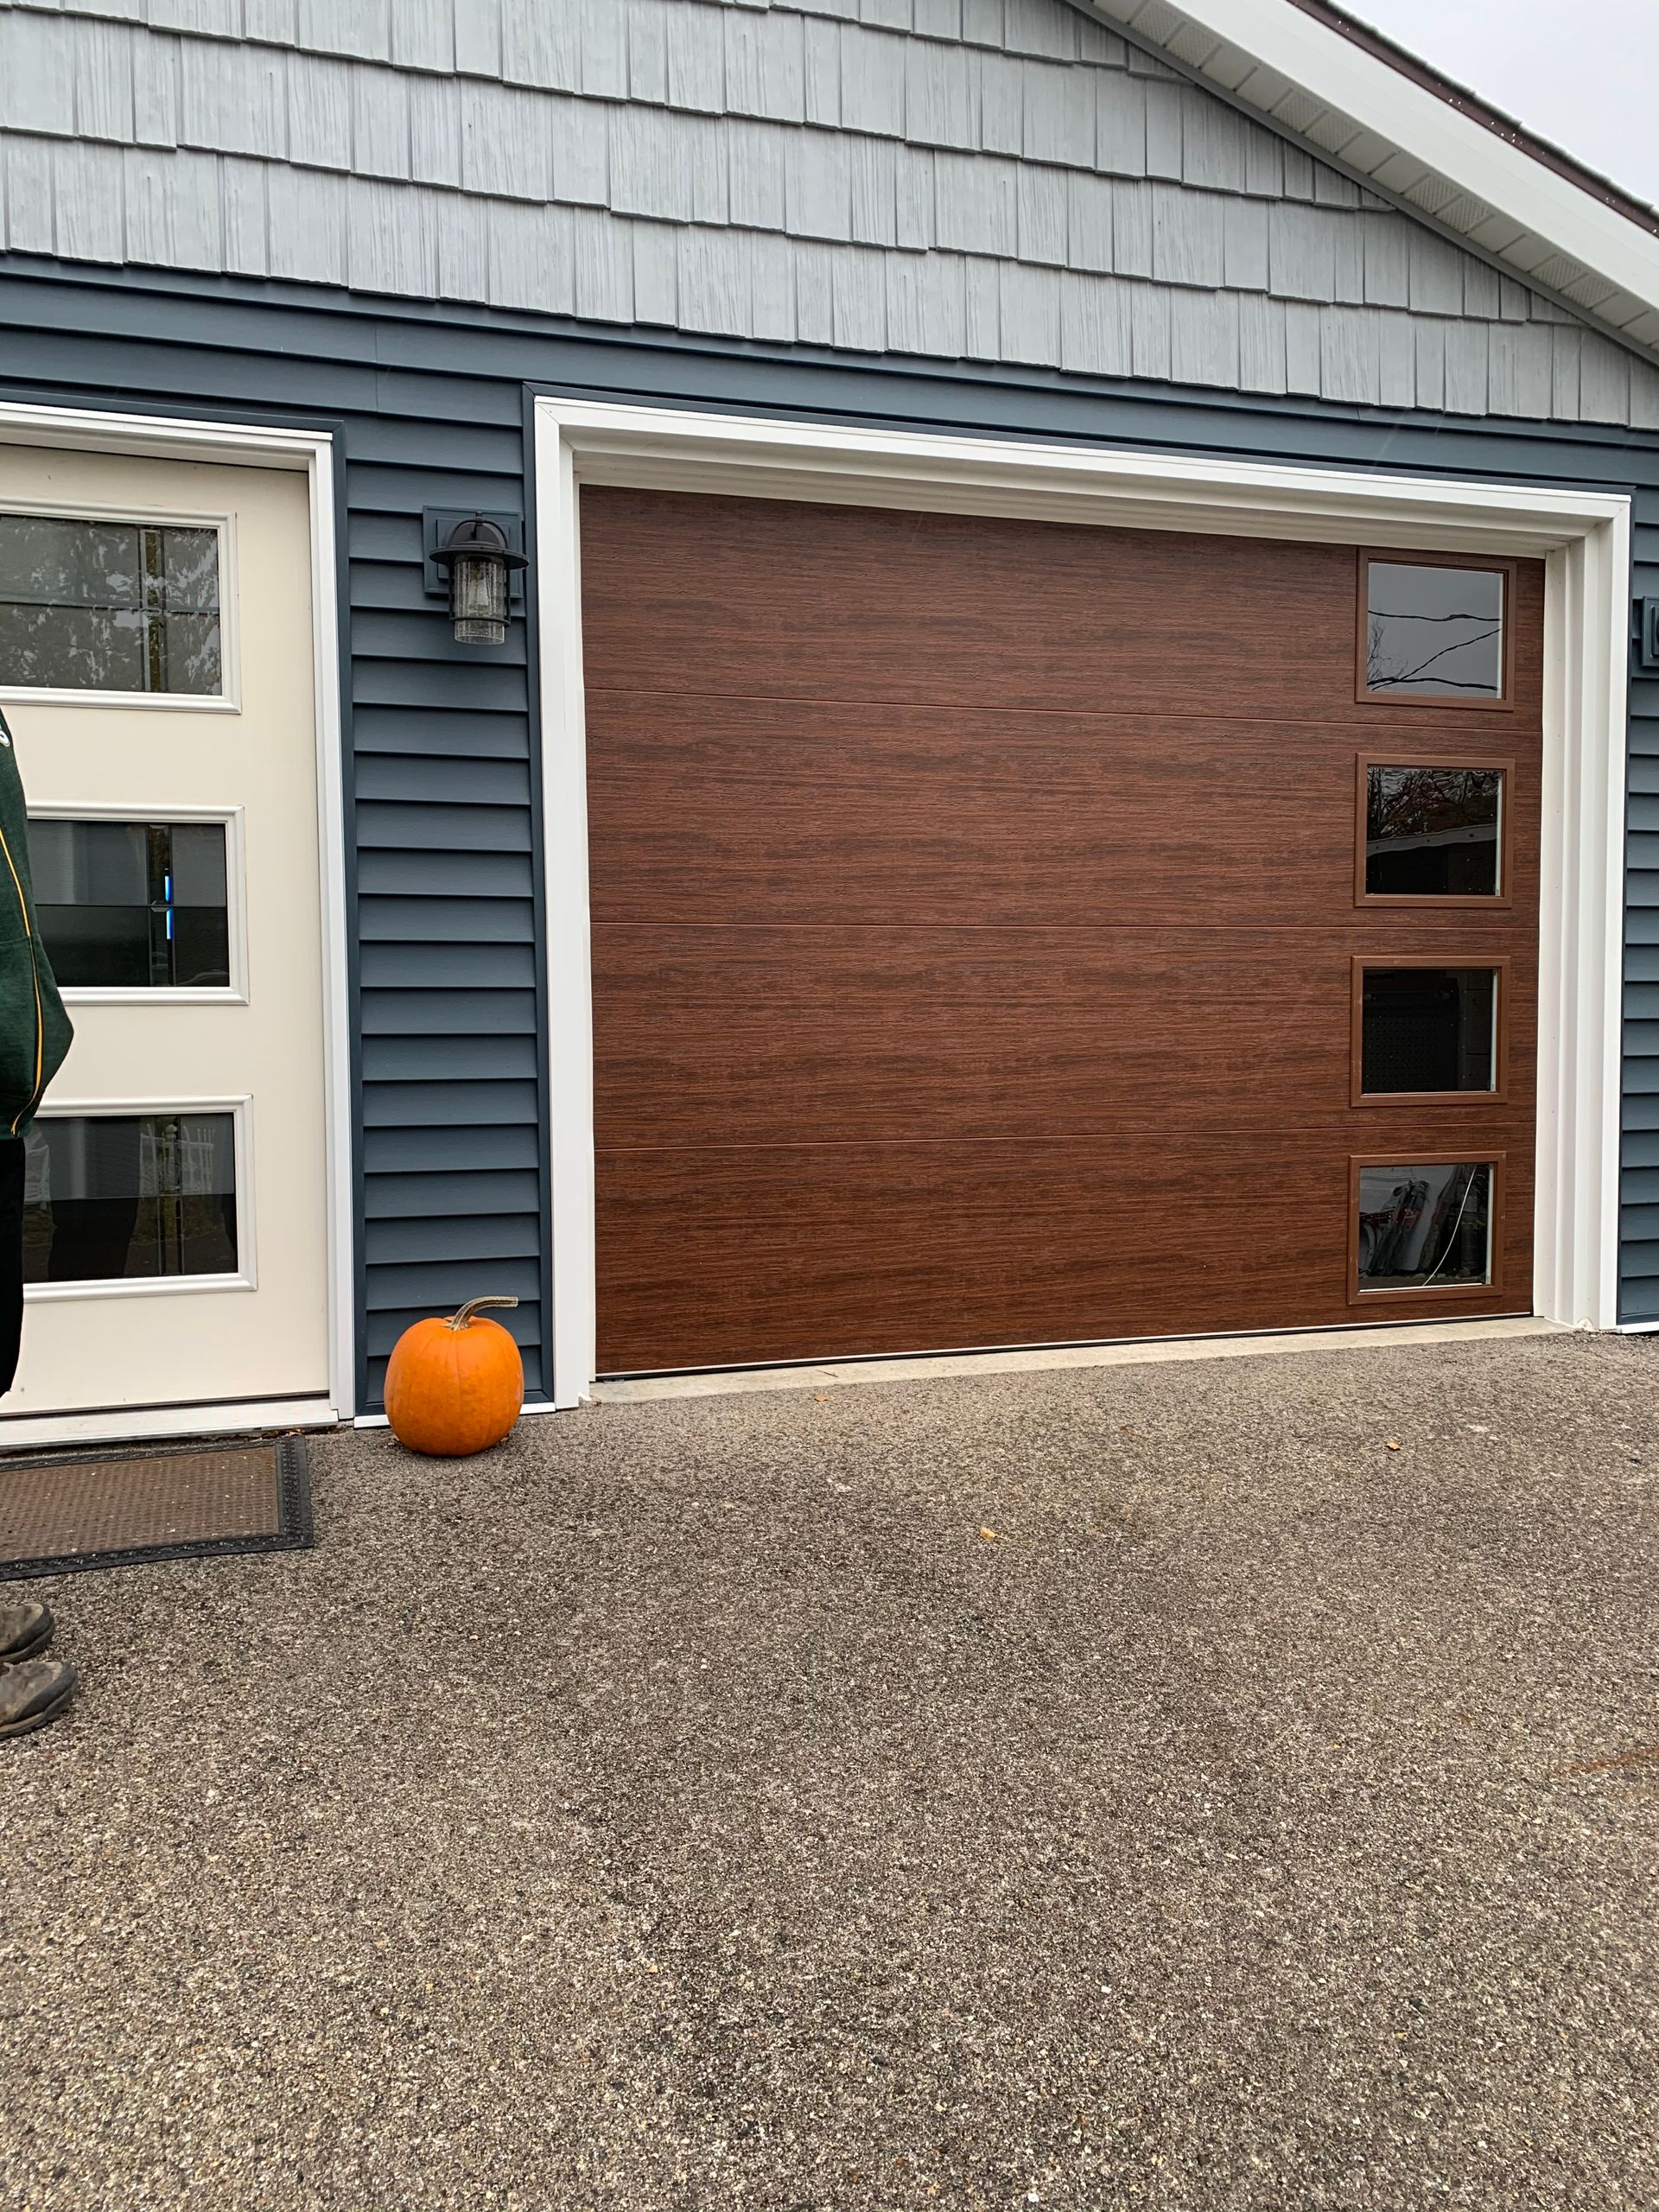 A garage door with a pumpkin in front of it